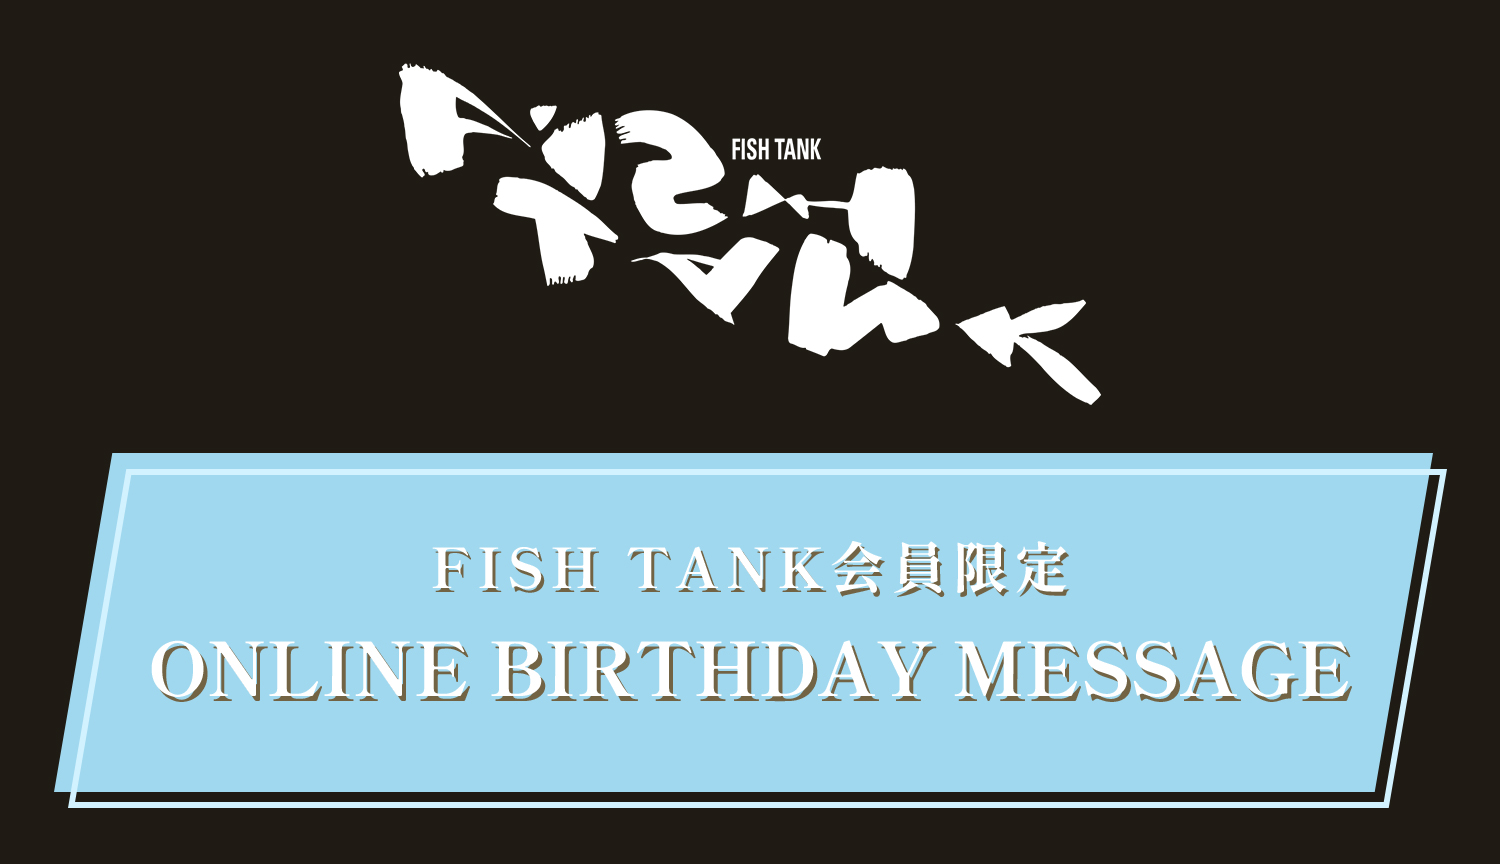 FISH TANK会員限定「HOSHINO HIDEHIKO ONLINE BIRTHDAY MESSAGE」募集のお知らせ